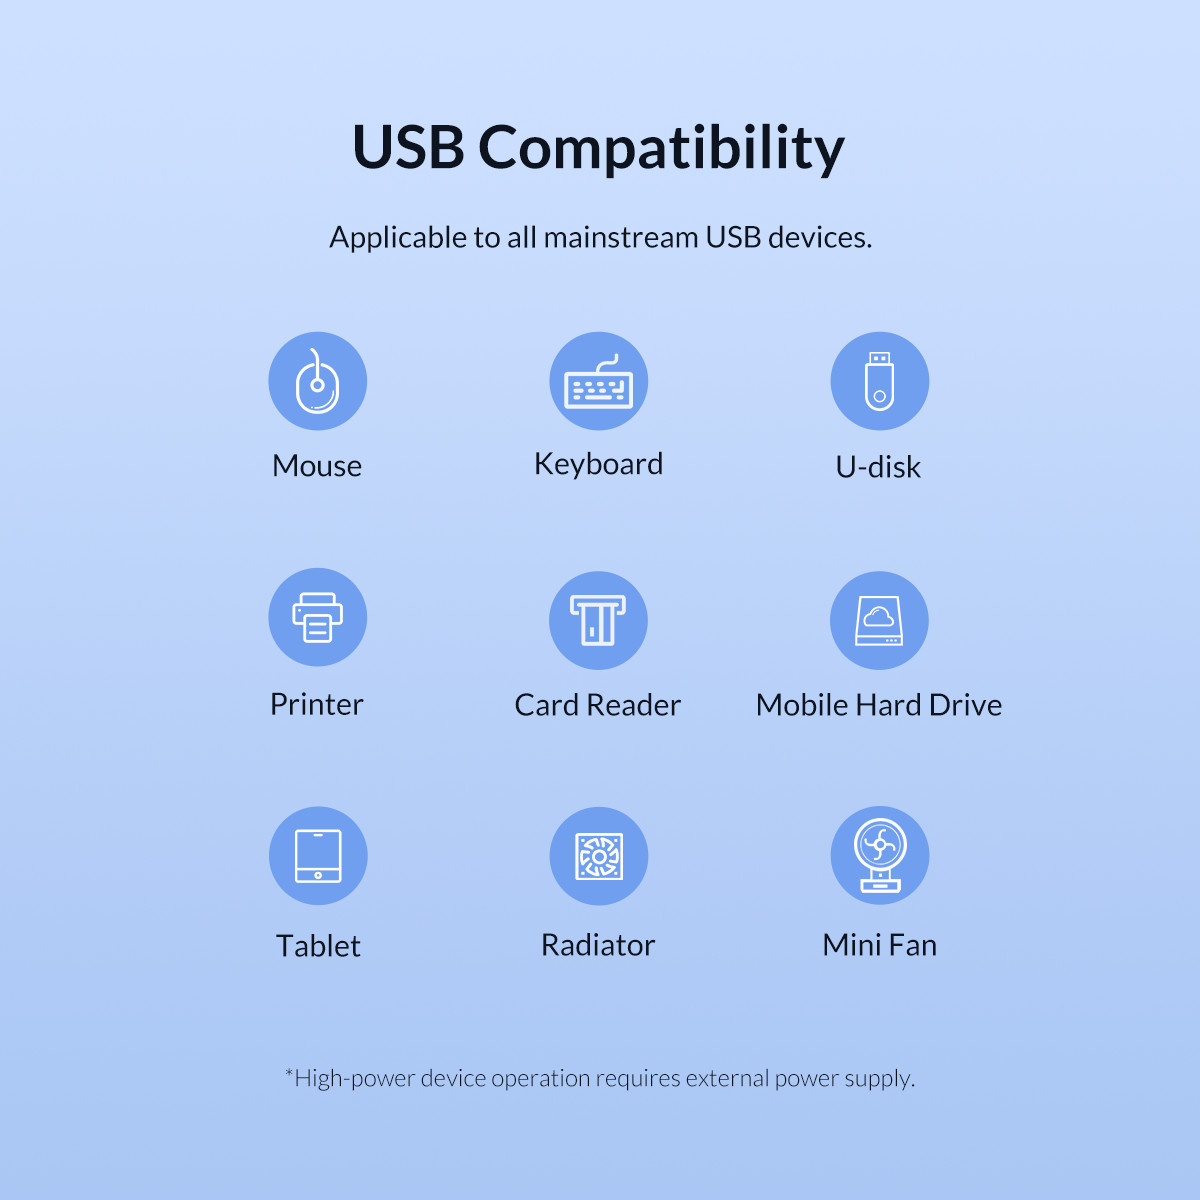 سازگار با دستگاه های UB متنوع